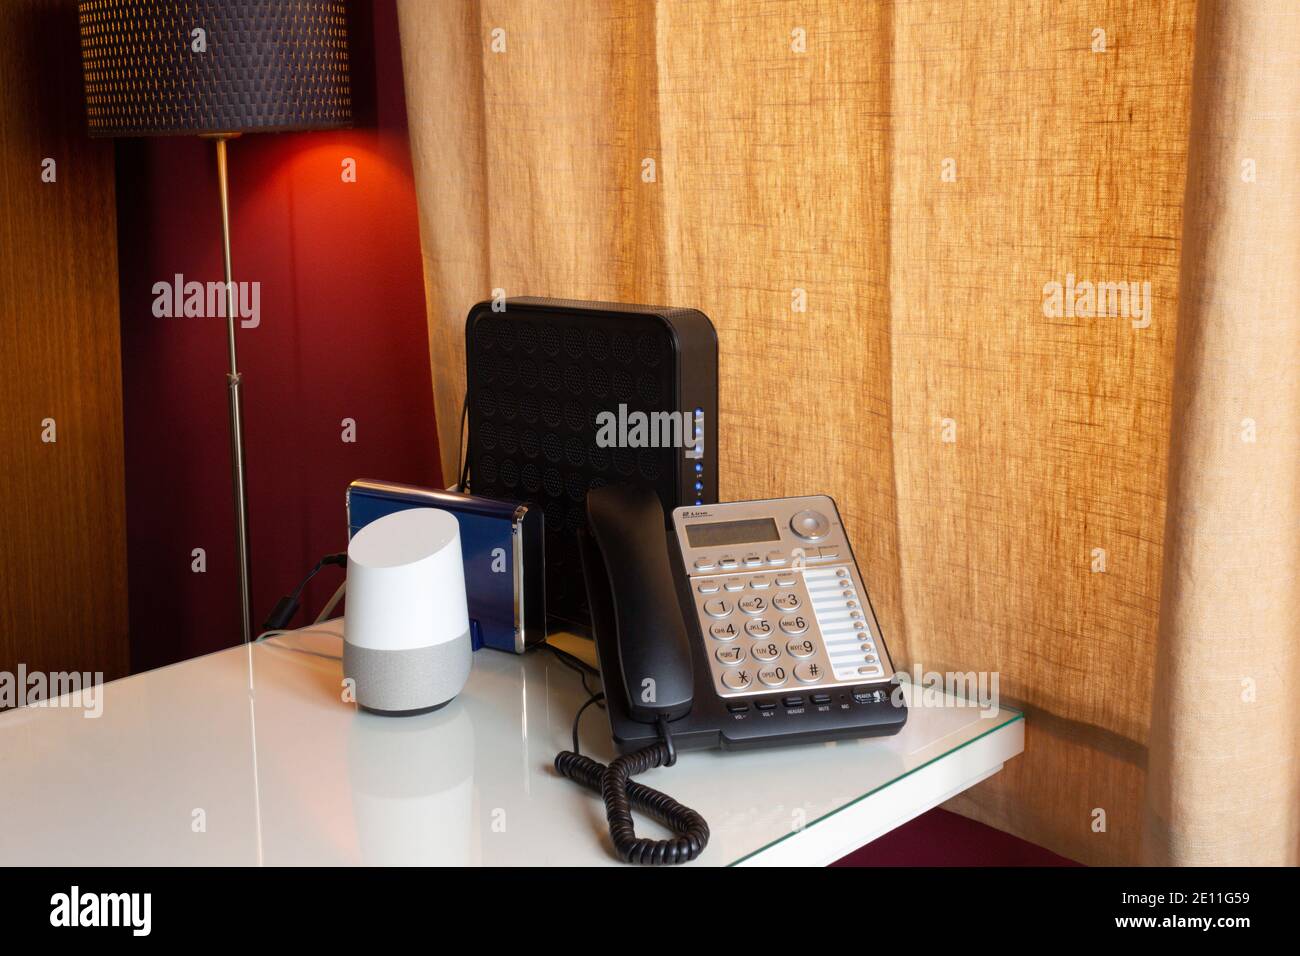 Home Office Schreibtisch mit einem sprachaktivierten, virtuellen Smart Assistant, einem Festnetztelefon und zwei Routern auf einem weißen Schreibtisch mit einer Lampe beleuchtet Stockfoto